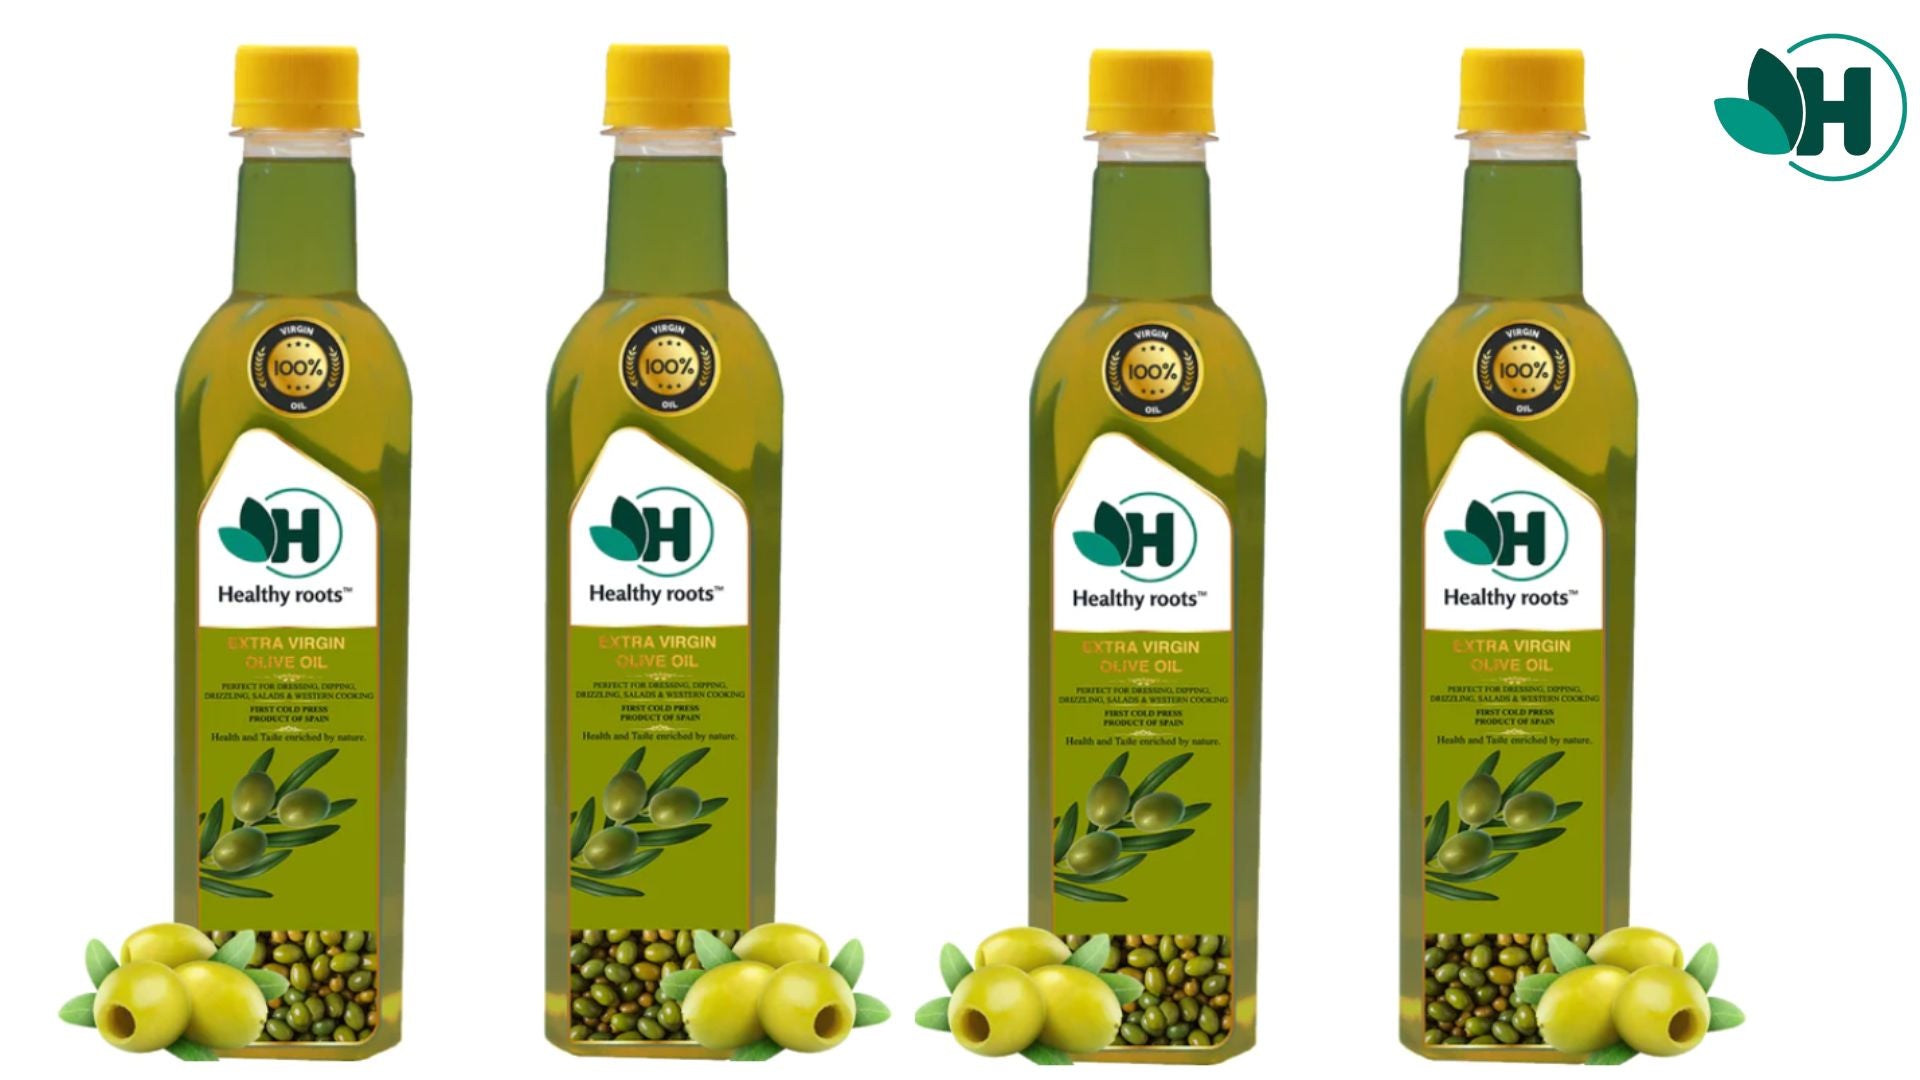 Olive oil for better health